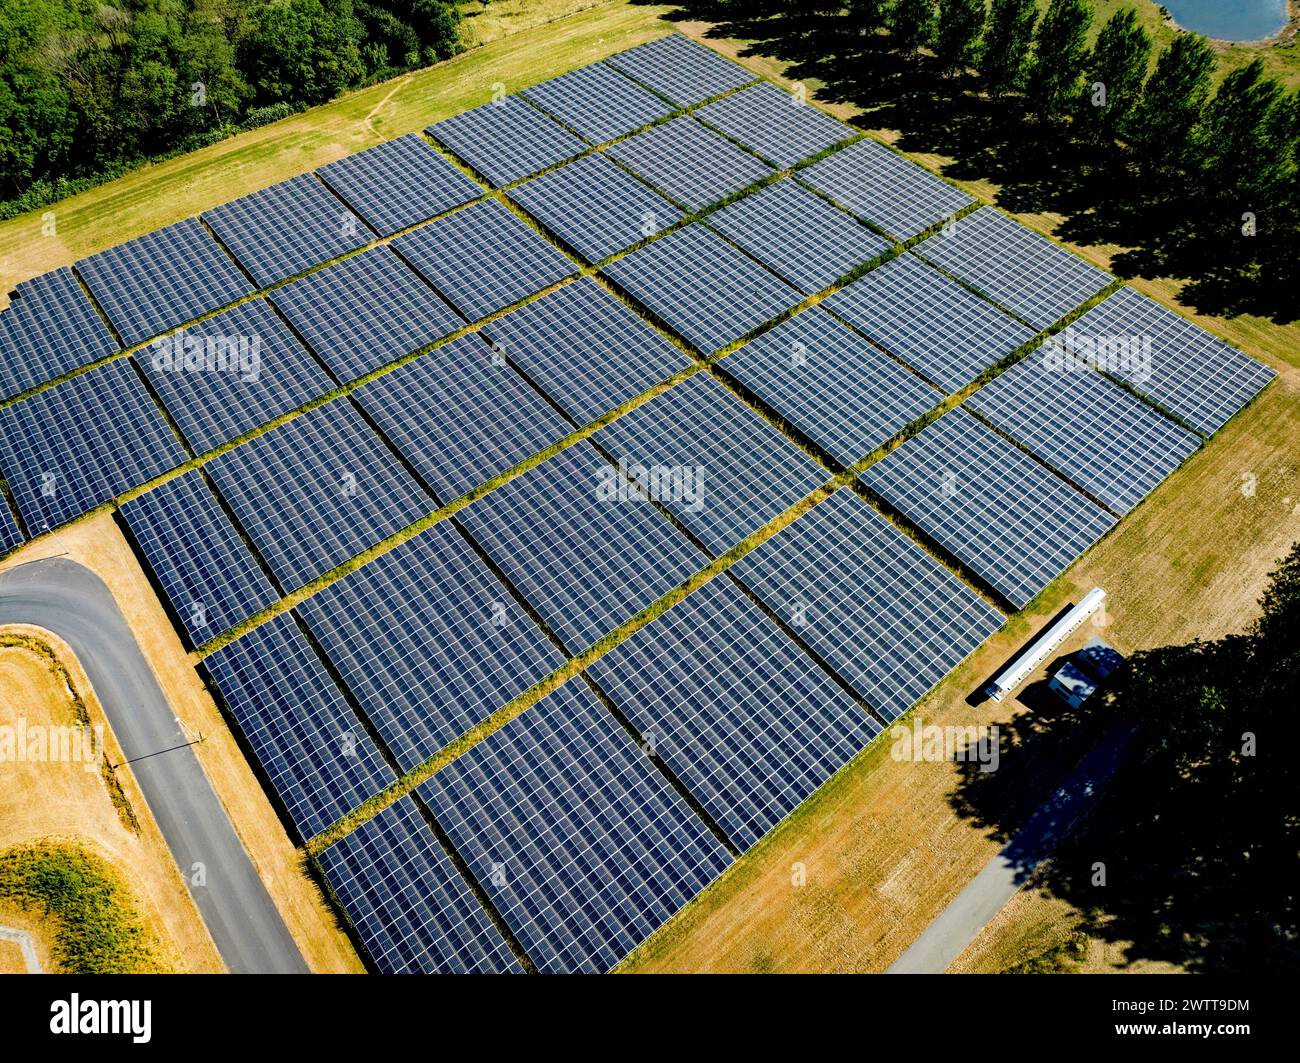 Aus der Vogelperspektive auf einen weitläufigen Solarpark, der die Energie der Sonne aufsaugt Stockfoto